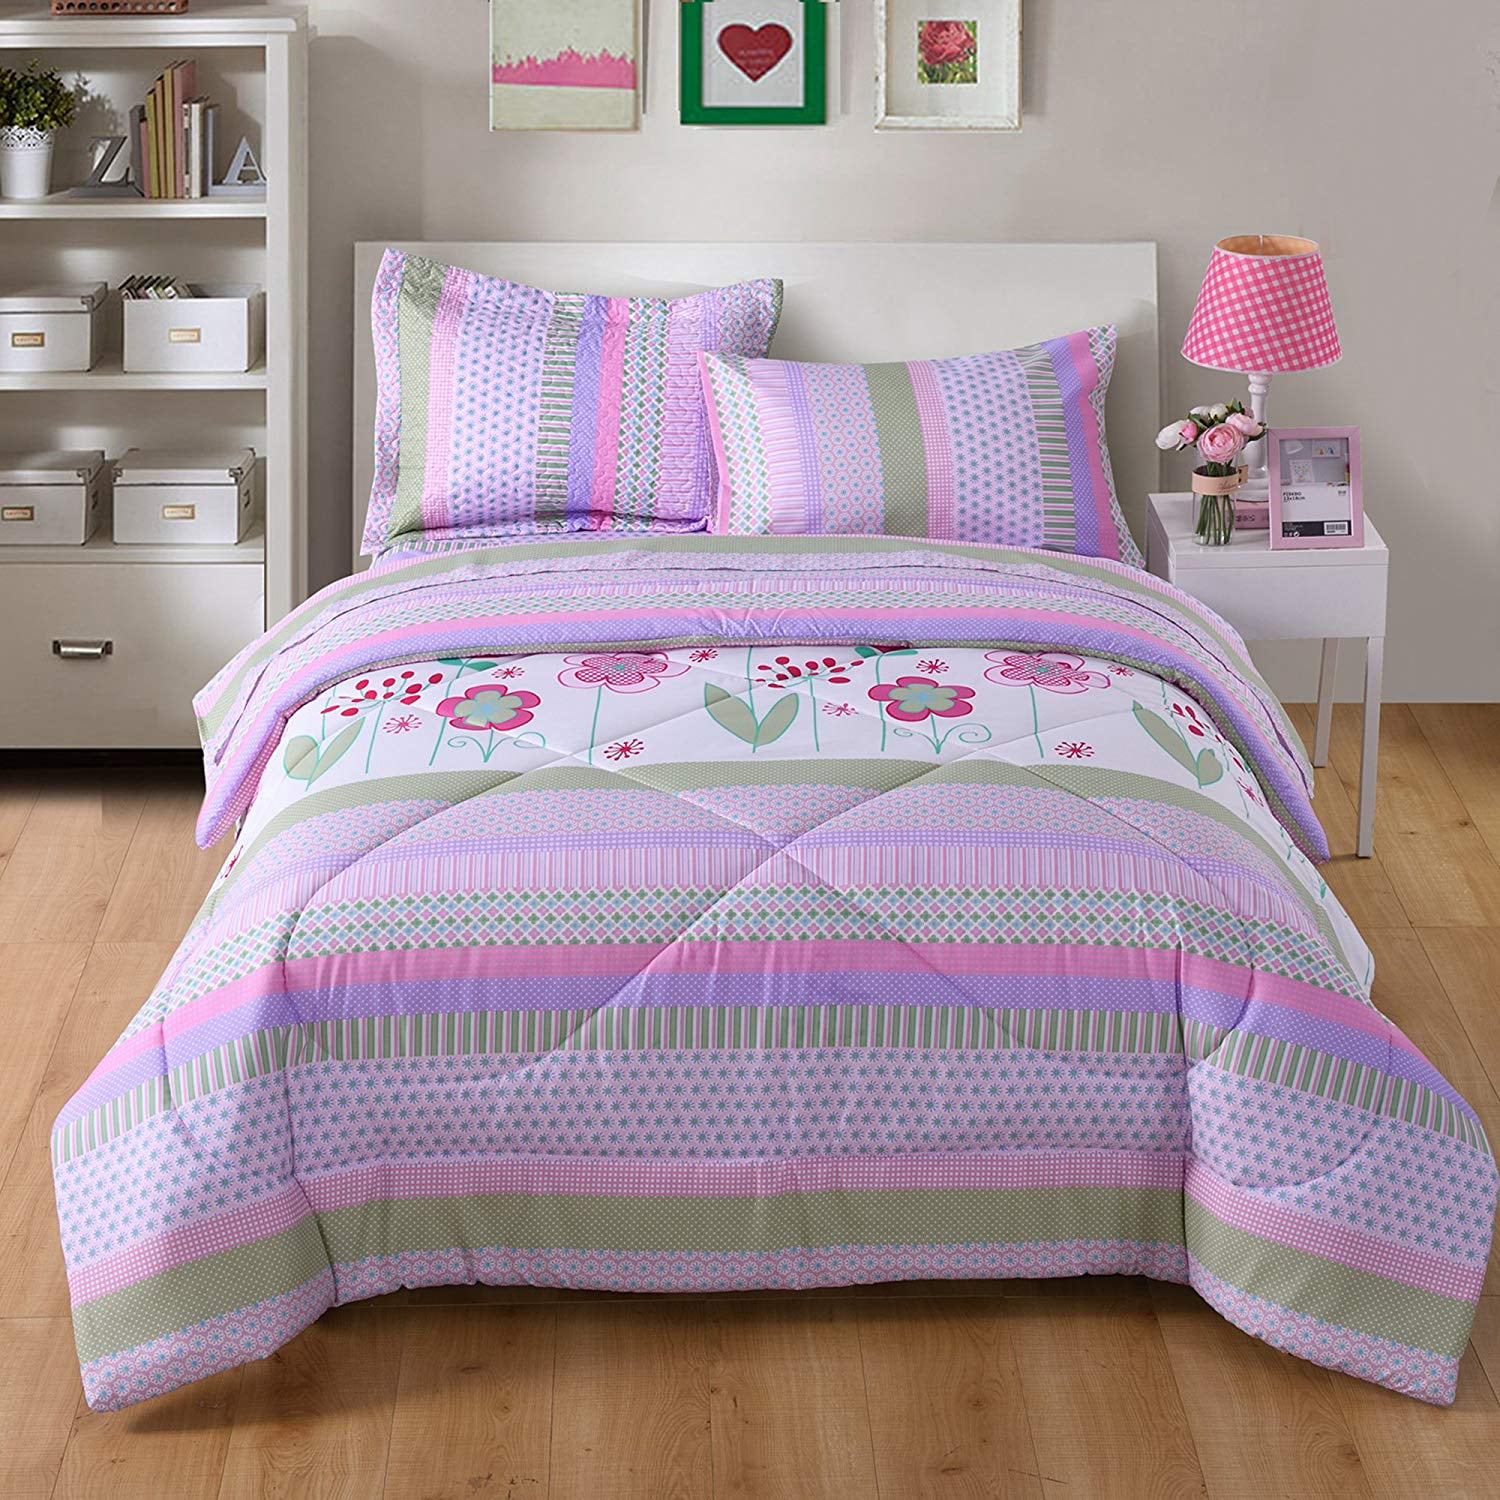 Girls Comforter Set Twin Bed Ultra Soft Microfiber Mattress Sheets Kids Bedding 